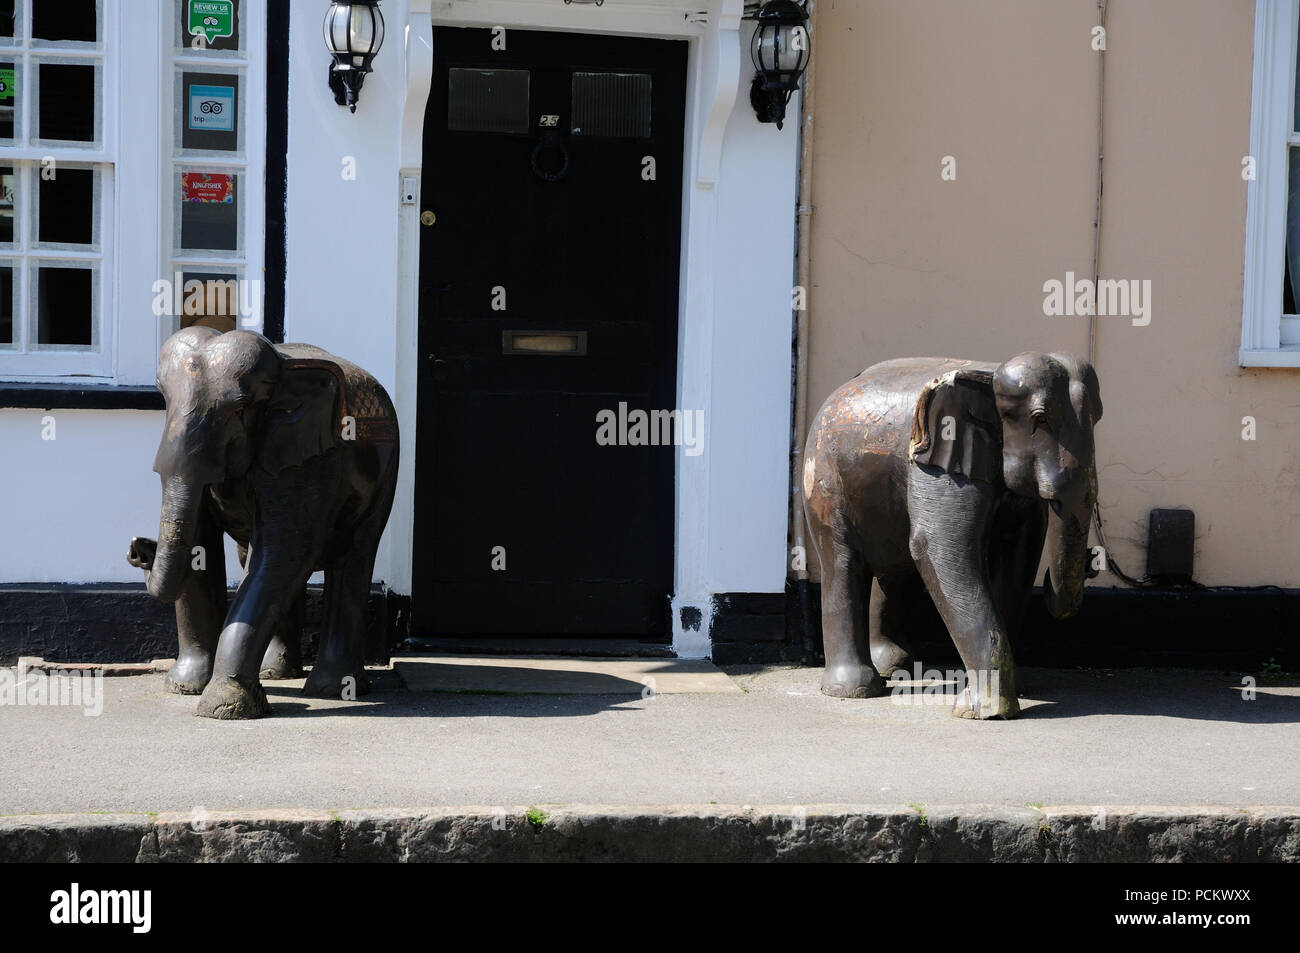 OrnamentaL Elephants, Wendover, Buckinghamshire Stock Photo